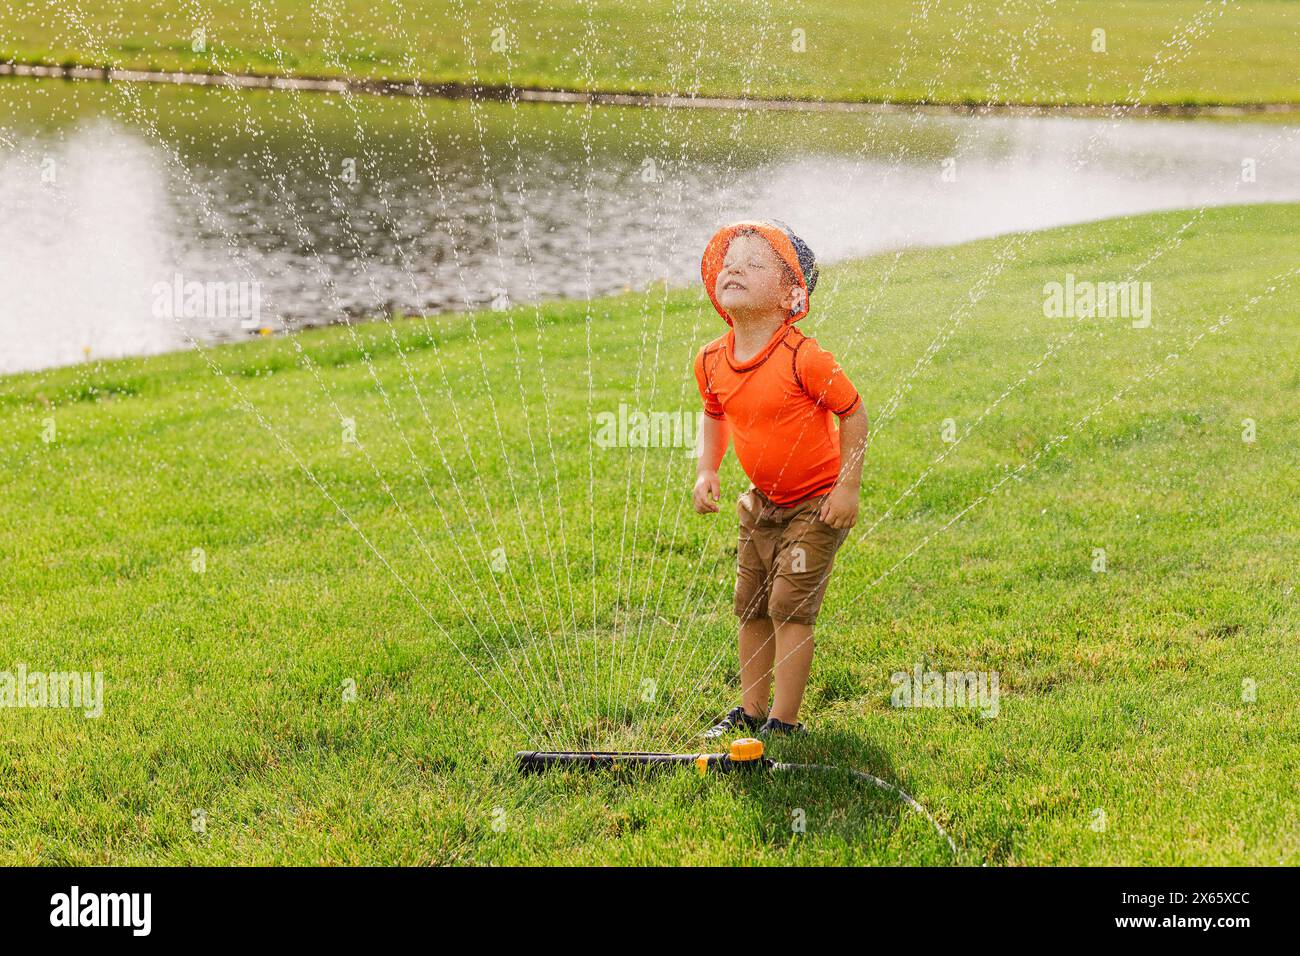 Kleines Kind genießt Wasserspiel im Rasen Stockfoto